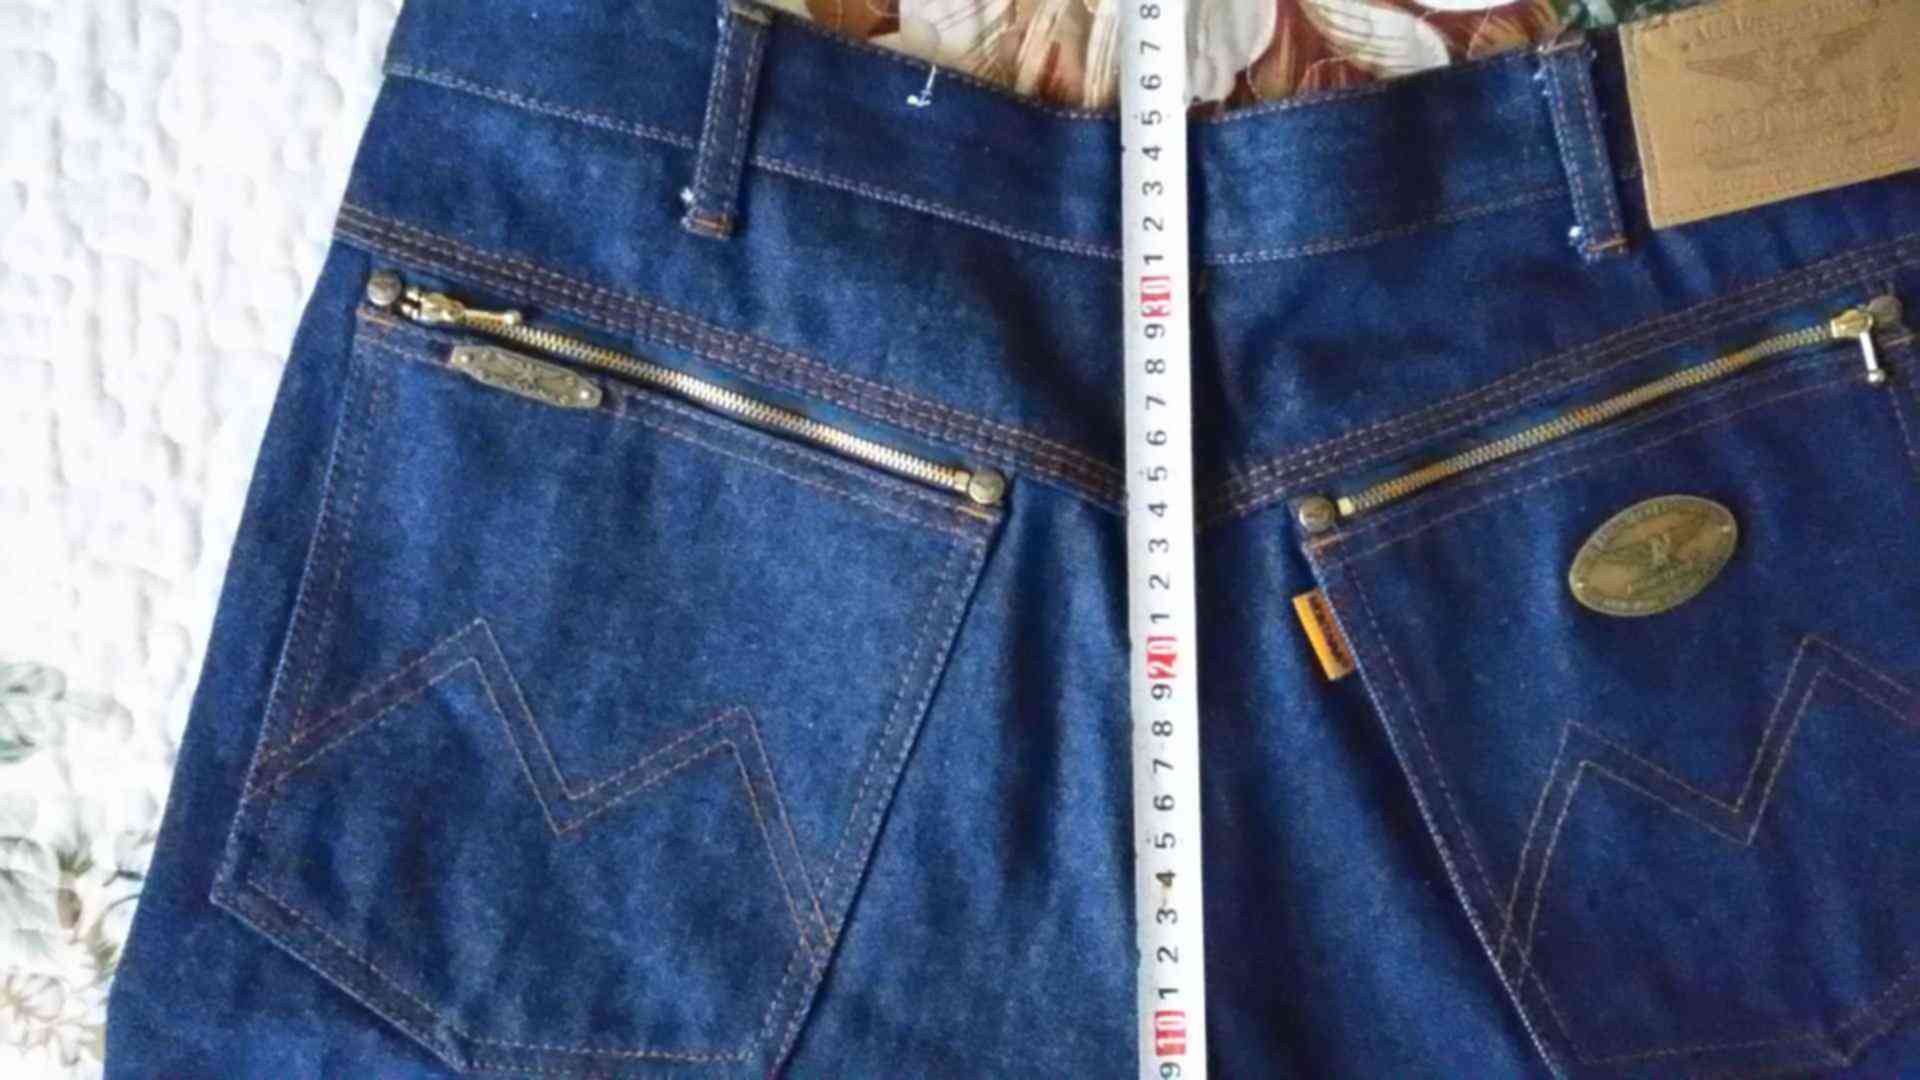 Старые джинсы монтана